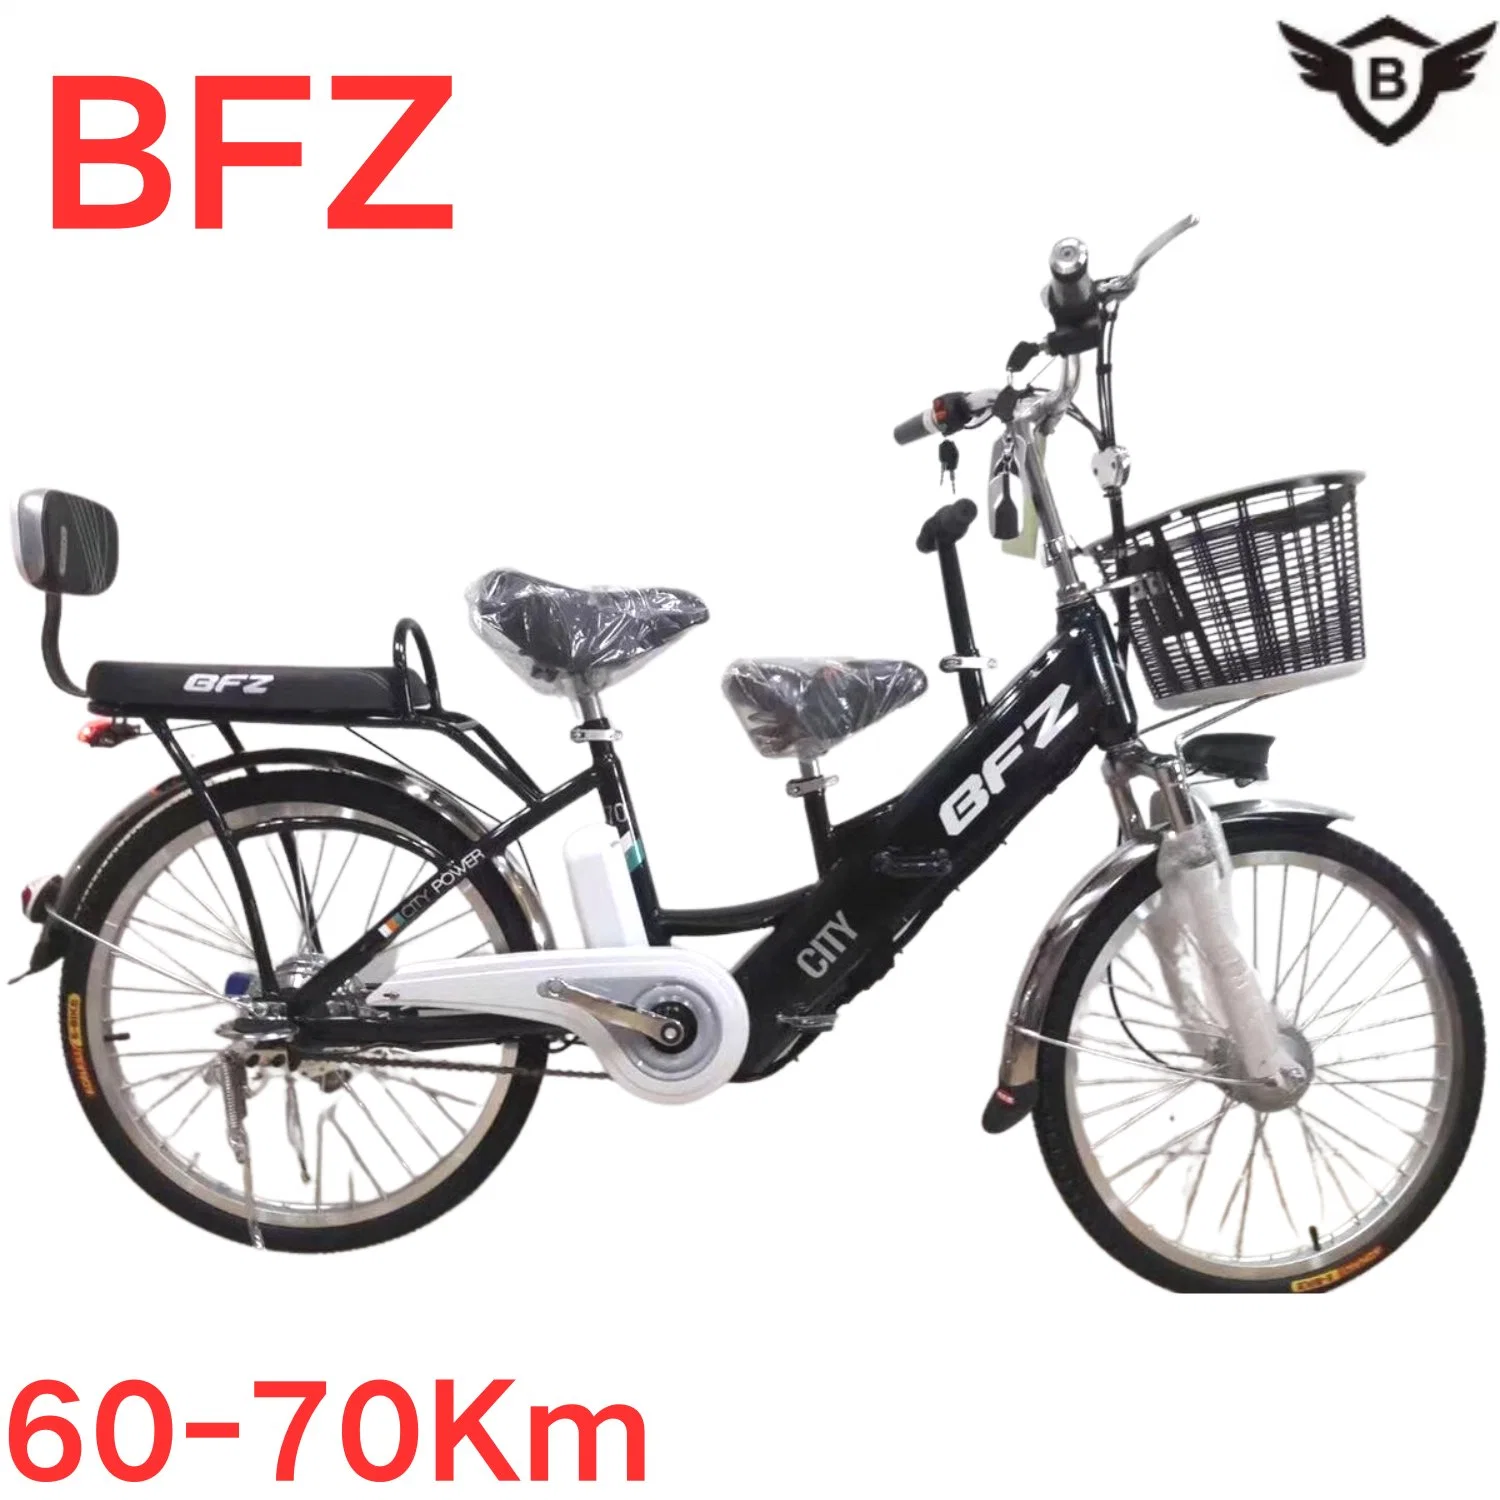 Bfz дороги электрический велосипед матери- ребенка велосипед удобный детский домашних хозяйств каретки